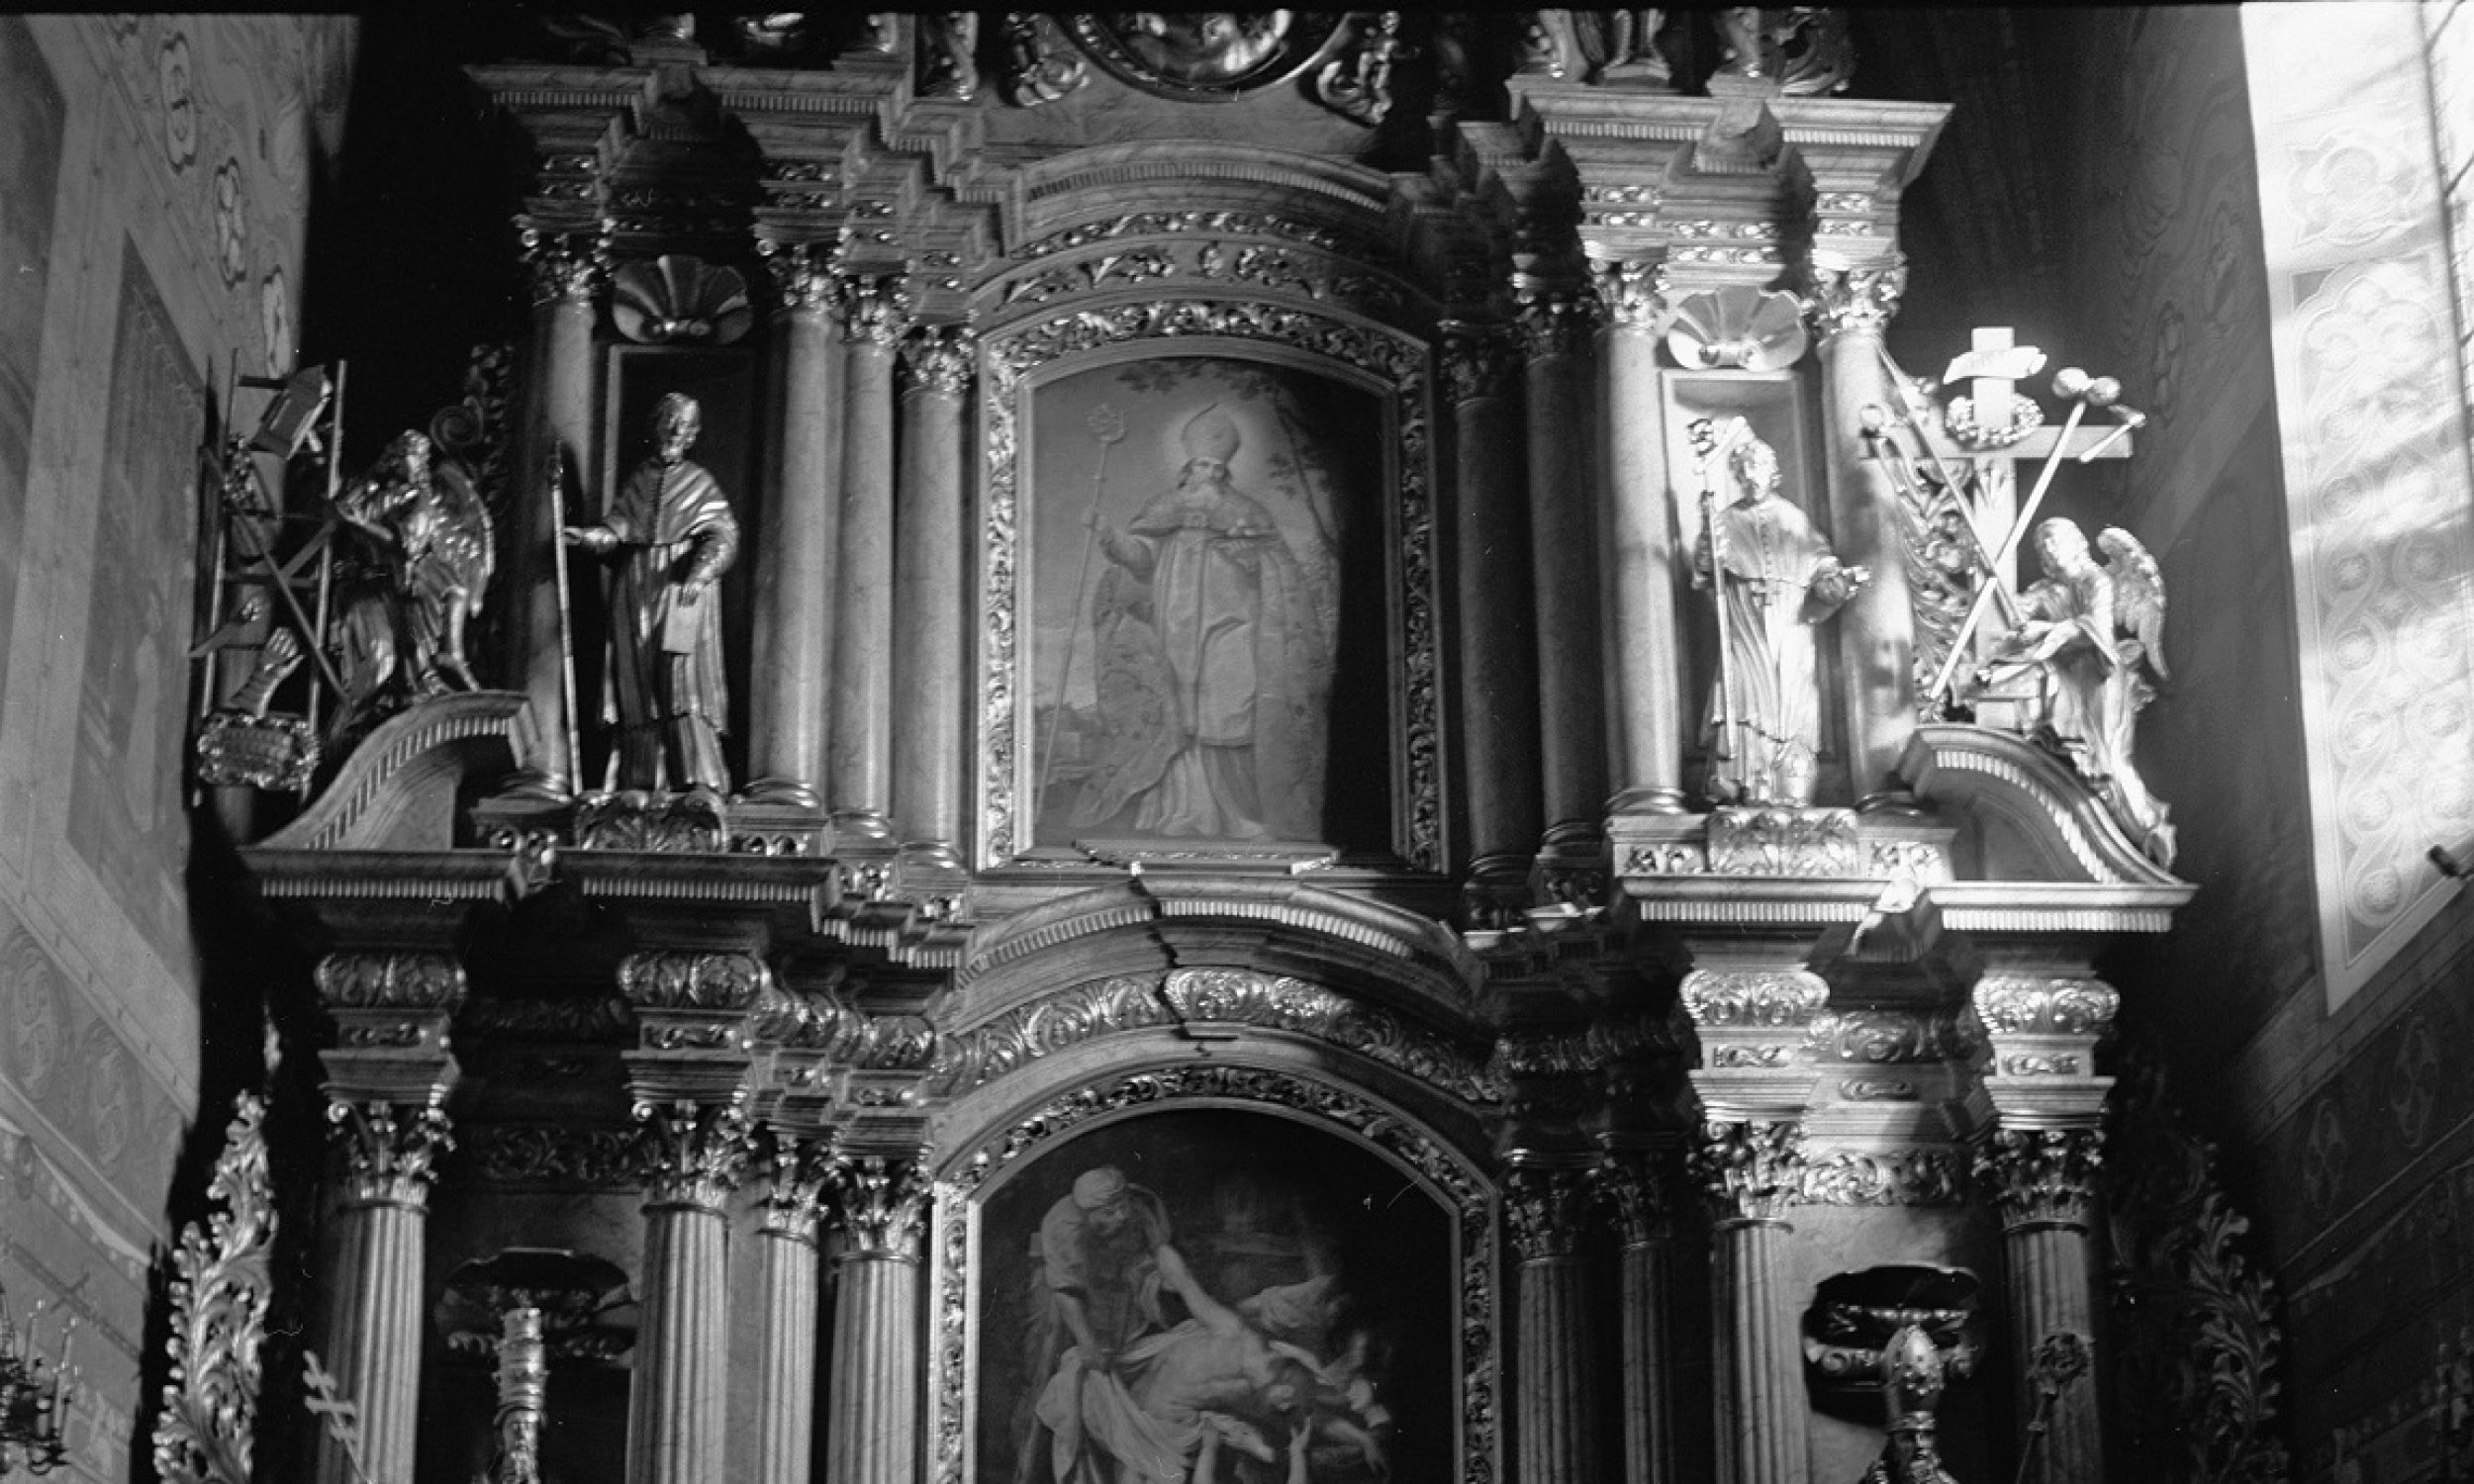 Przed pożarem ołtarz główny zdobiły dwa obrazy: „Zdjęcie z Krzyża” Petera Paula Rubensa (poniżej) oraz wizerunek św. Mikołaja pędzla nieznanego artysty. Fot. PAP/Witold Rozmysłowicz